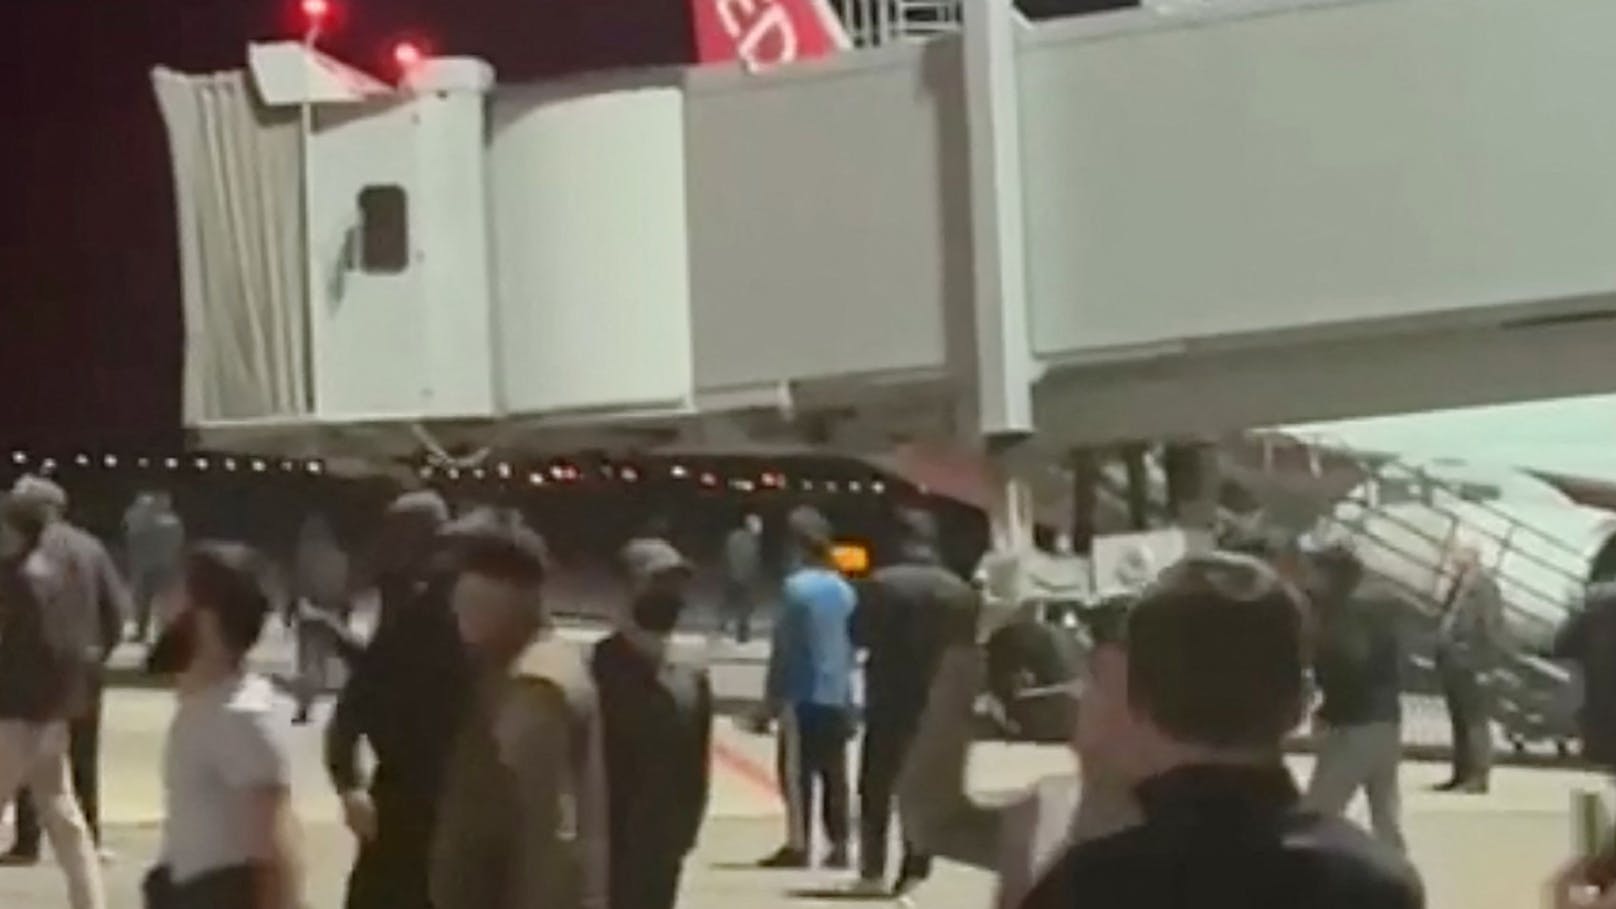 Nach israelischen Angaben befindet sich eine "kleine Zahl von Israelis/Juden" auf dem Flughafen, die derzeit von der Security bewacht werden.